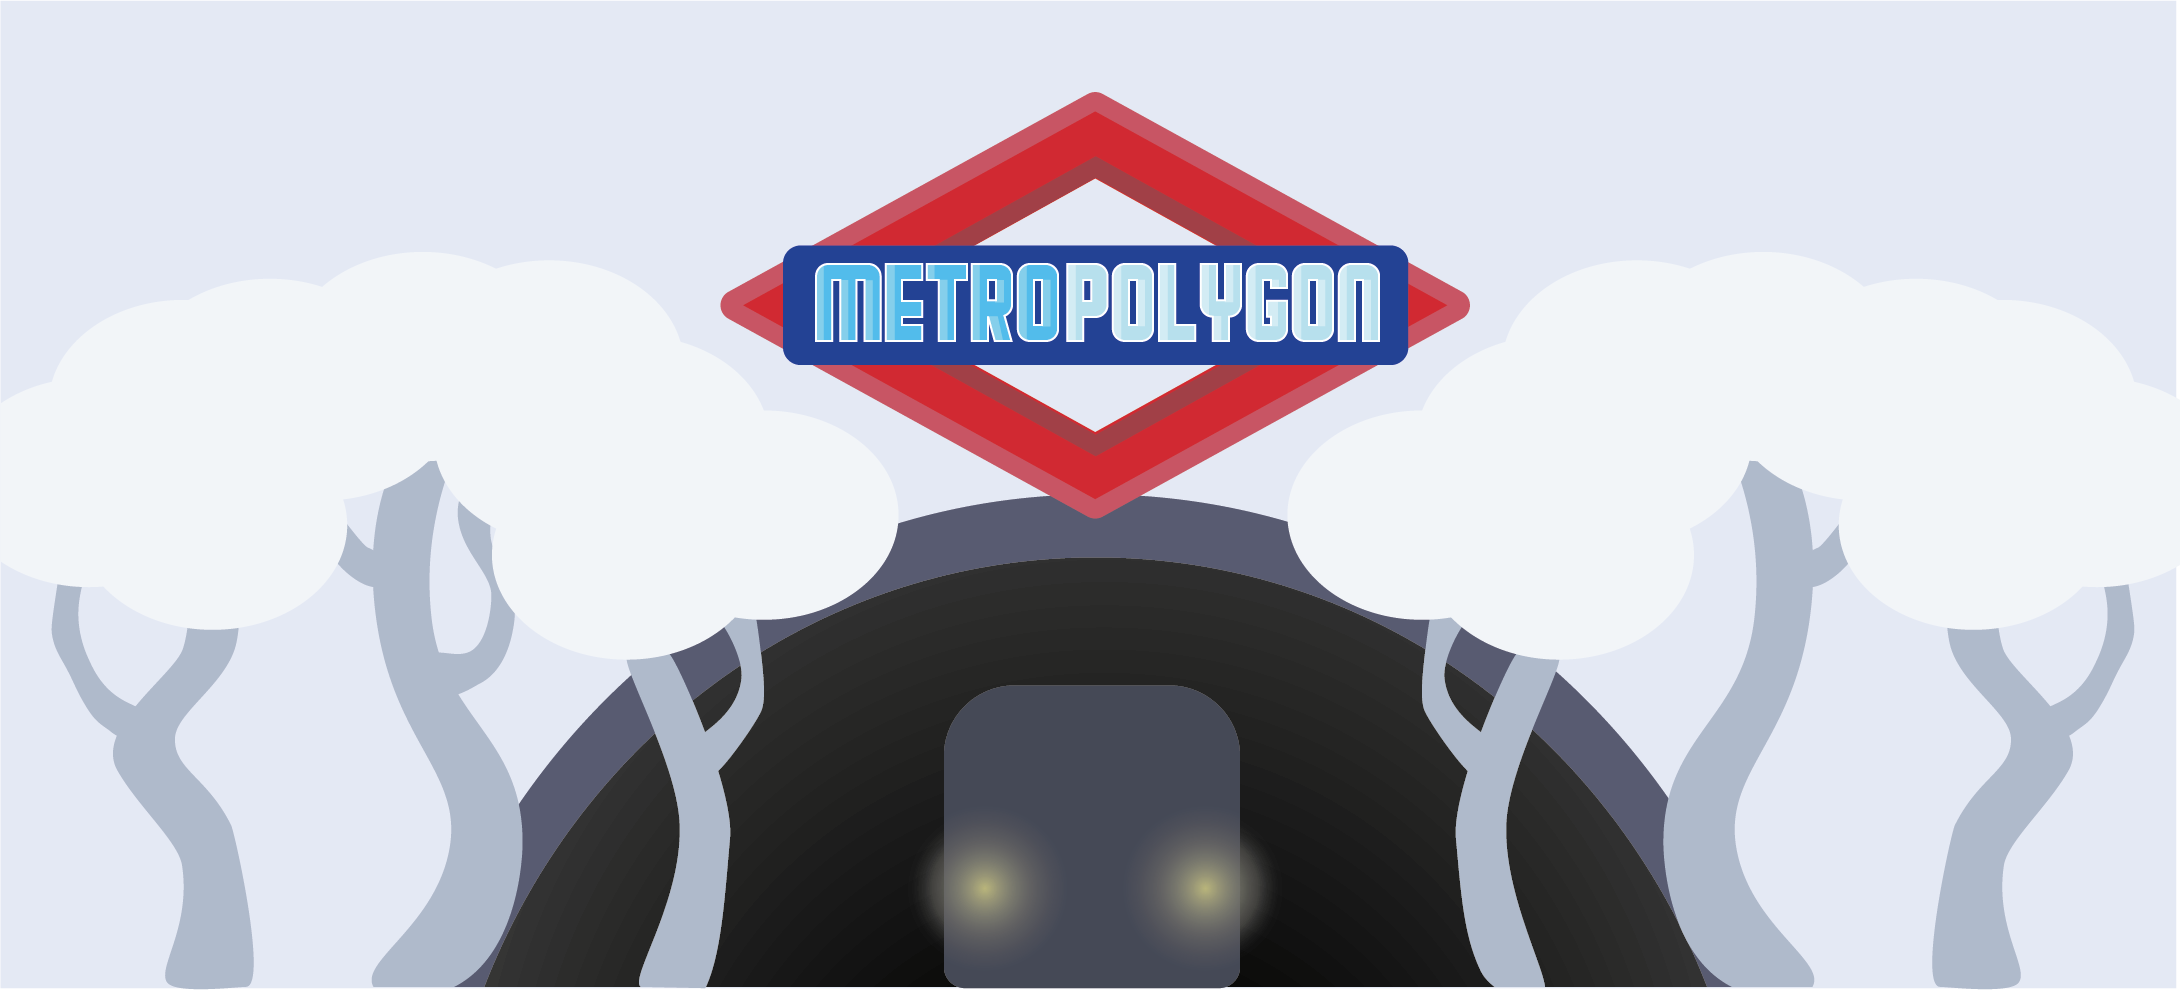 Metropolygon